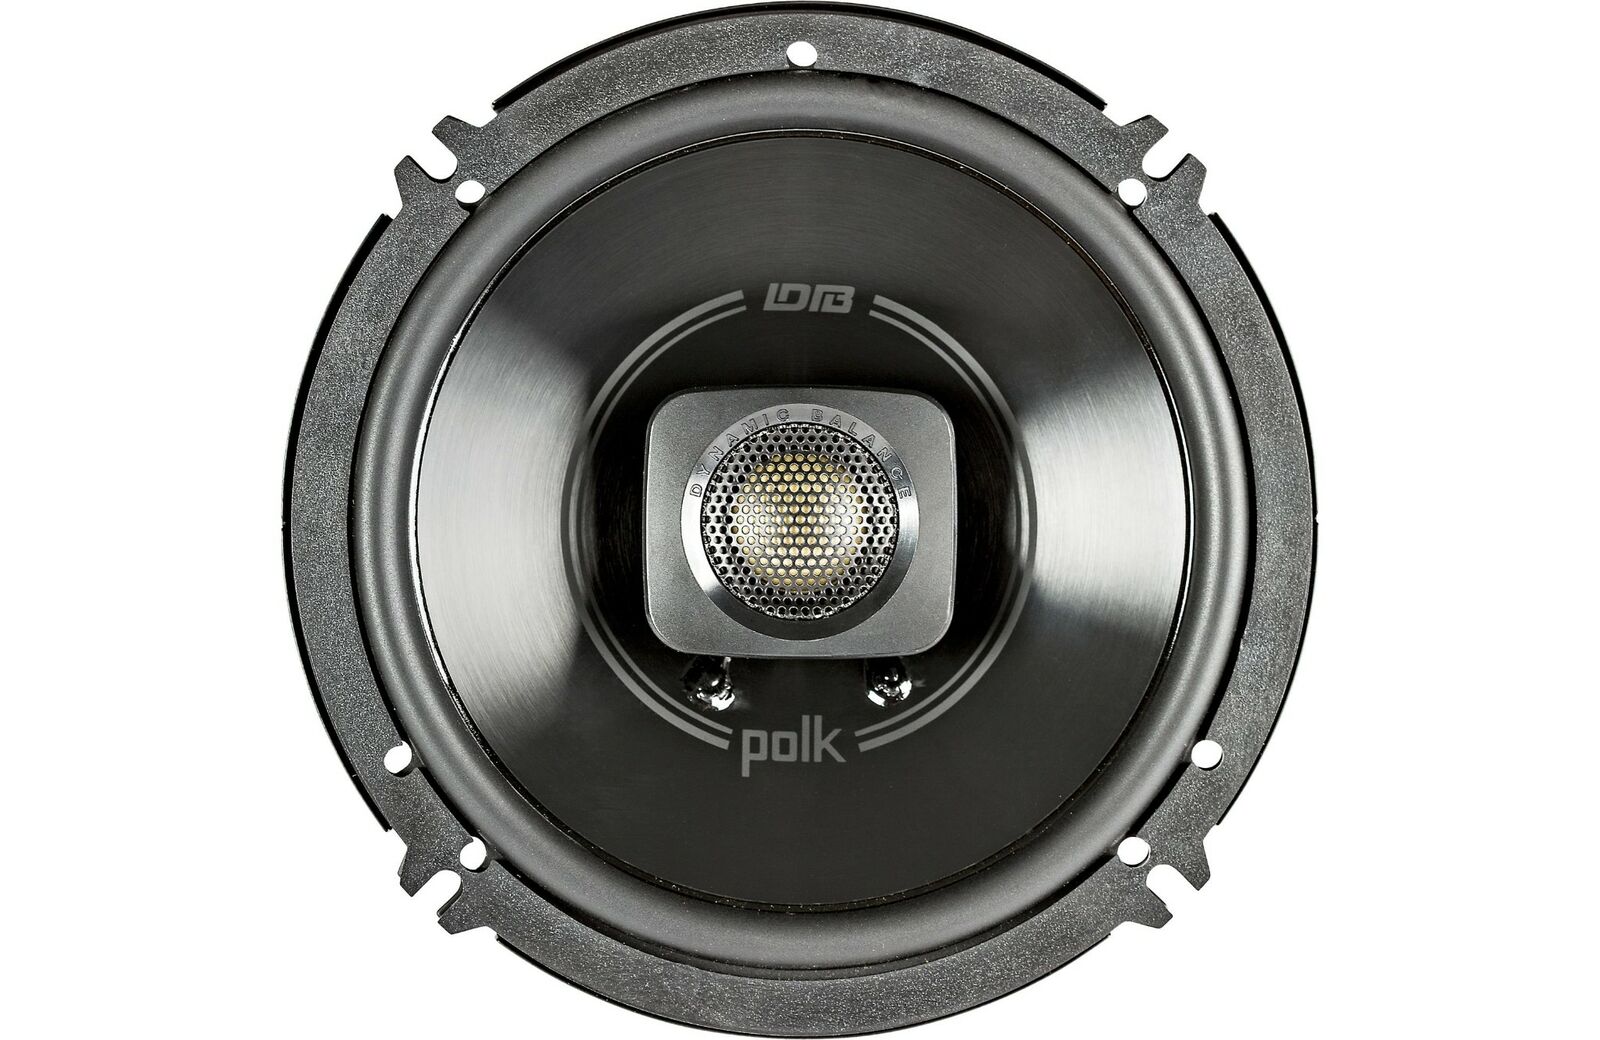 Two Pair Of Polk Audio DB 652 DB+ 6-1/2"  car speakers / Marine / Powersport